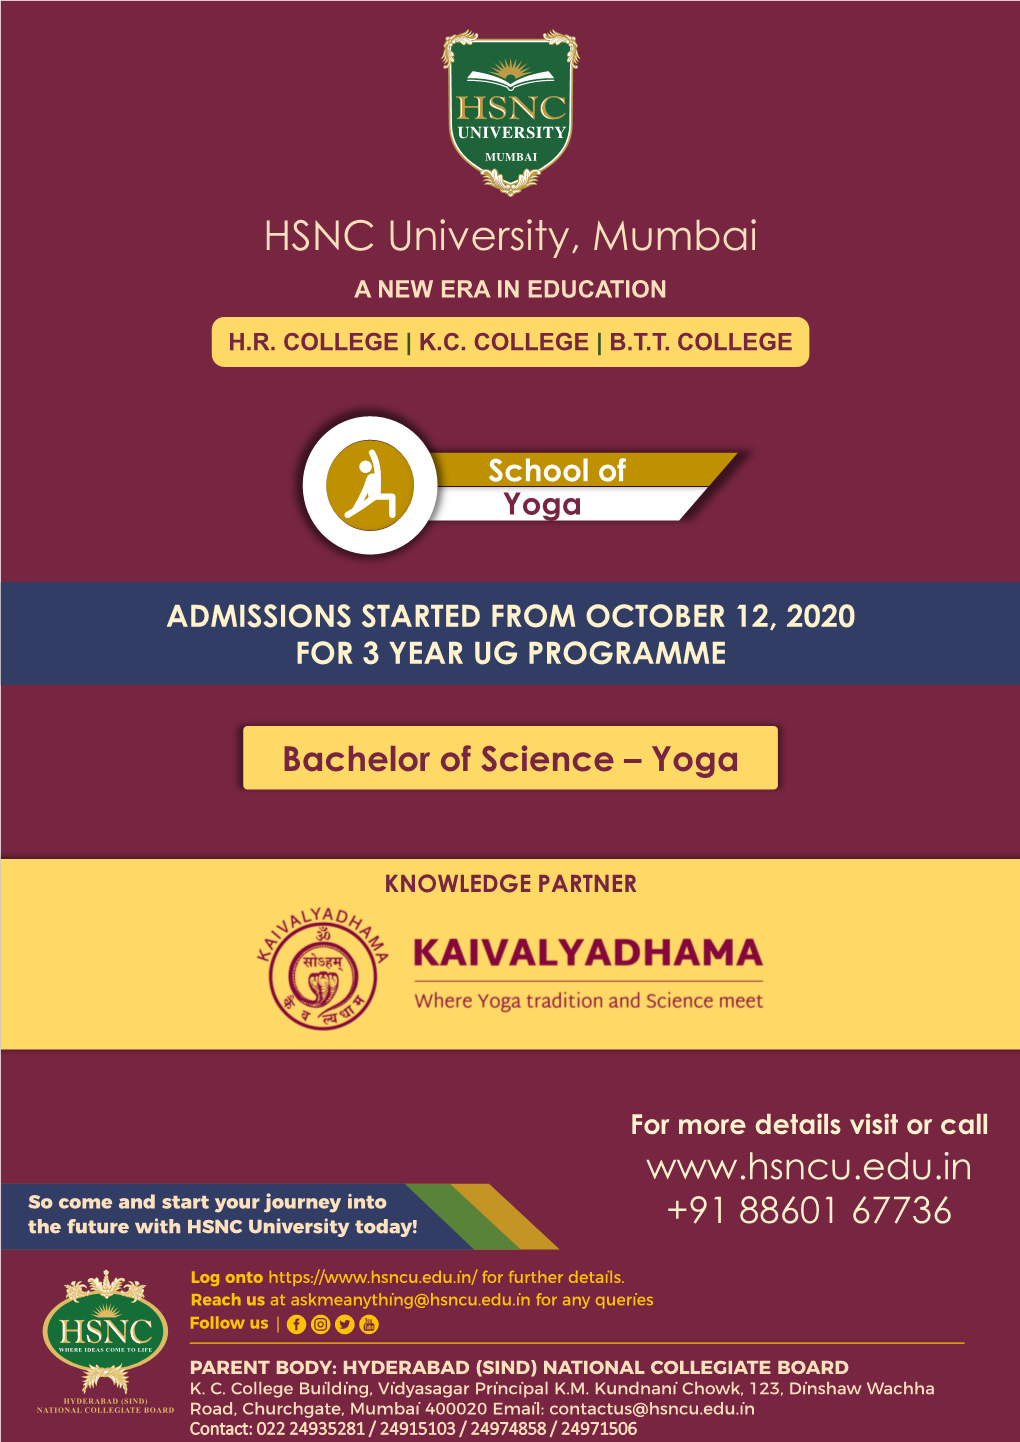 HSNC University, Mumbai a NEW ERA in EDUCATION